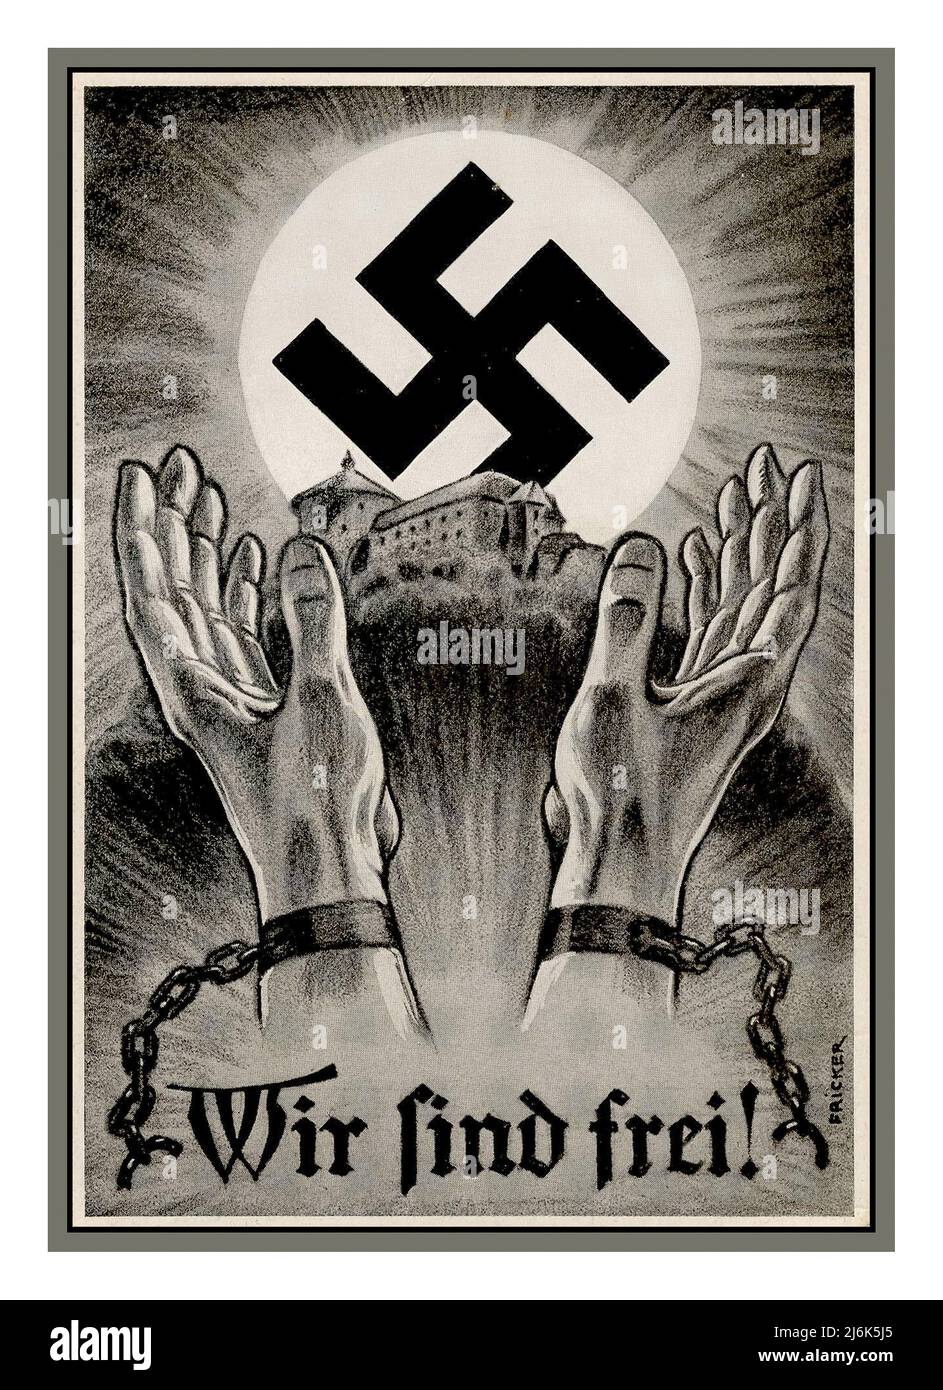 1930s Póster de la Tarjeta de Propaganda Nazi ' Wir Sind Frei' 'Somos libres' que ilustra un par de manos que se rompen de esposas con el Castillo de Nuremberg y el símbolo brillante de Swastika como sol que se levanta detrás. Alemania Nazi de Nuremberg, por el artista FRICKER Foto de stock